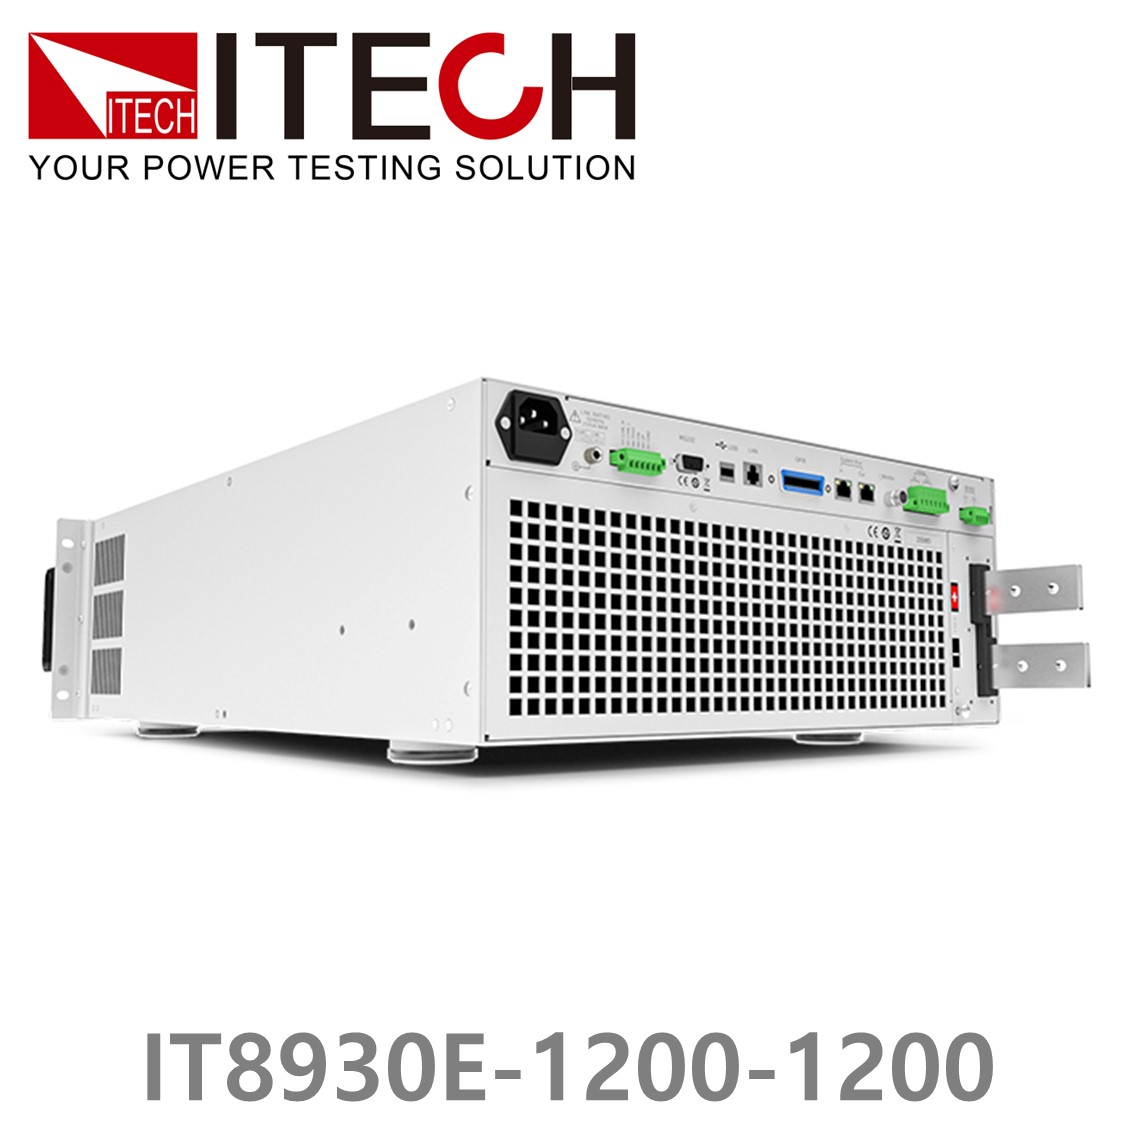 [ ITECH ] IT8930E-1200-1200  고성능 고전력 DC 전자로드 1200V/1200A/30kW (27U)